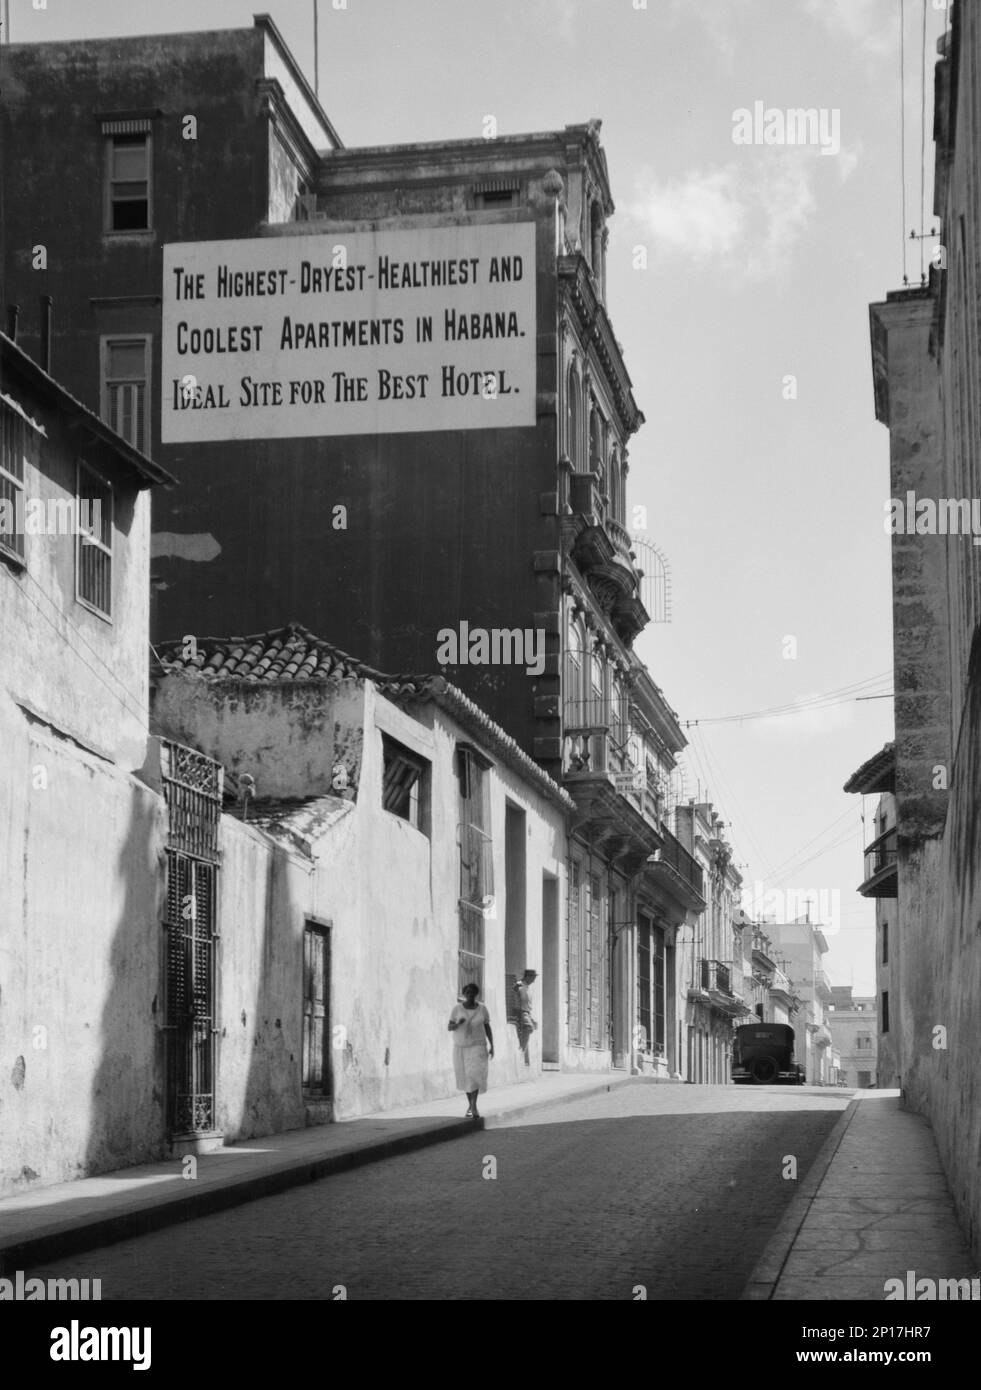 Viste di viaggio di Cuba e Guatemala, tra il 1899 e il 1926. Street scene a Cuba: 'Il più alto - Dryest - più sano e cool appartamenti in Habana. Sito ideale per il Best Hotel'. Foto Stock